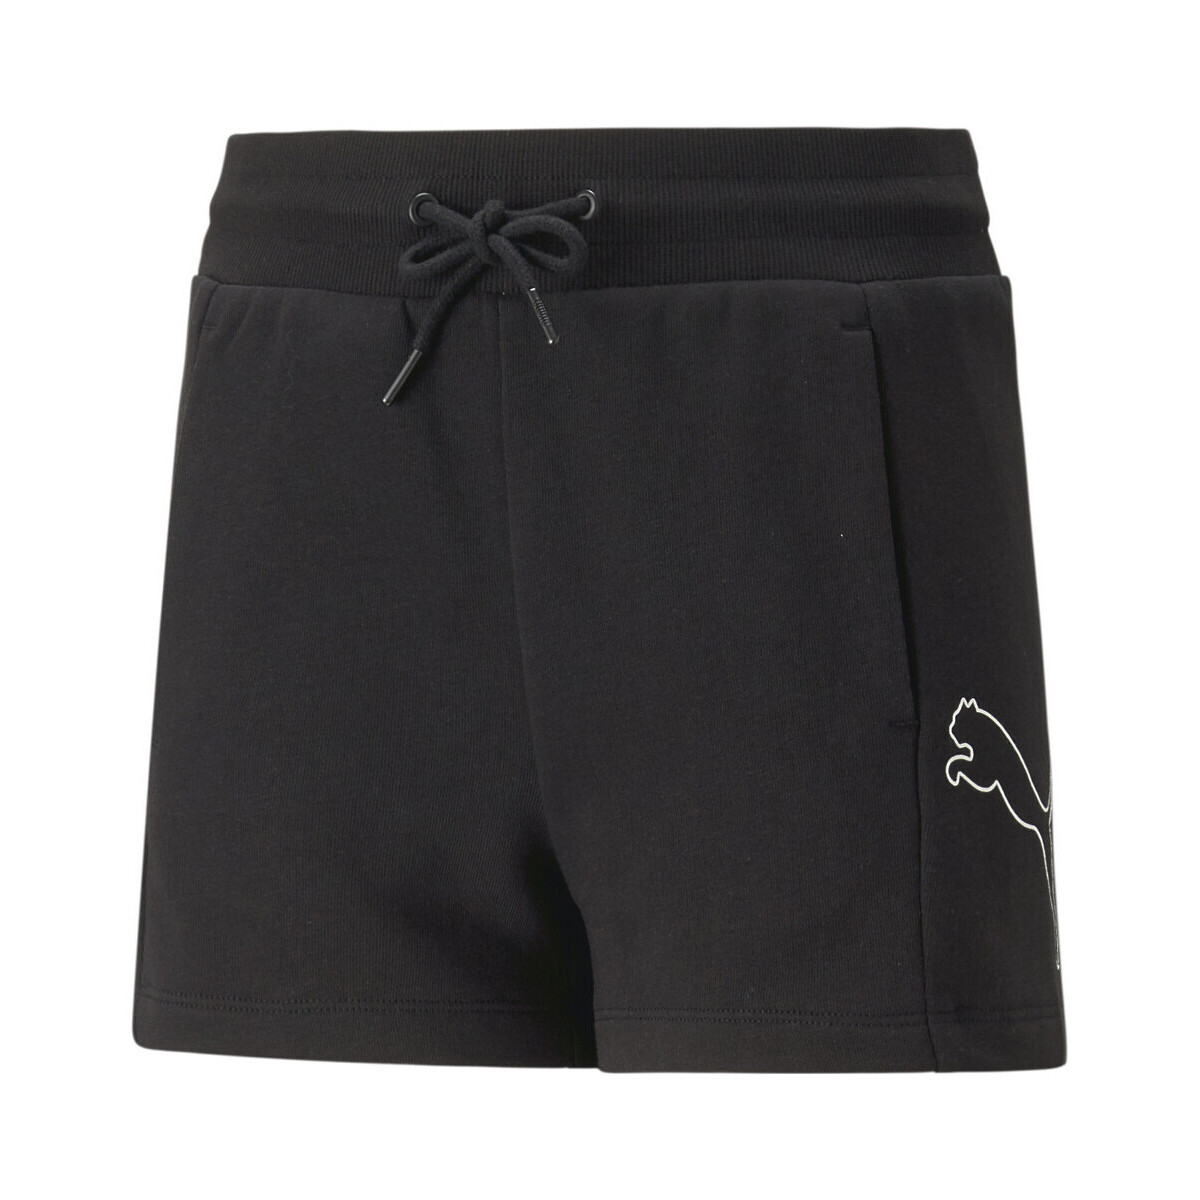 Kleidung Mädchen Shorts / Bermudas Puma 673553-01 Schwarz